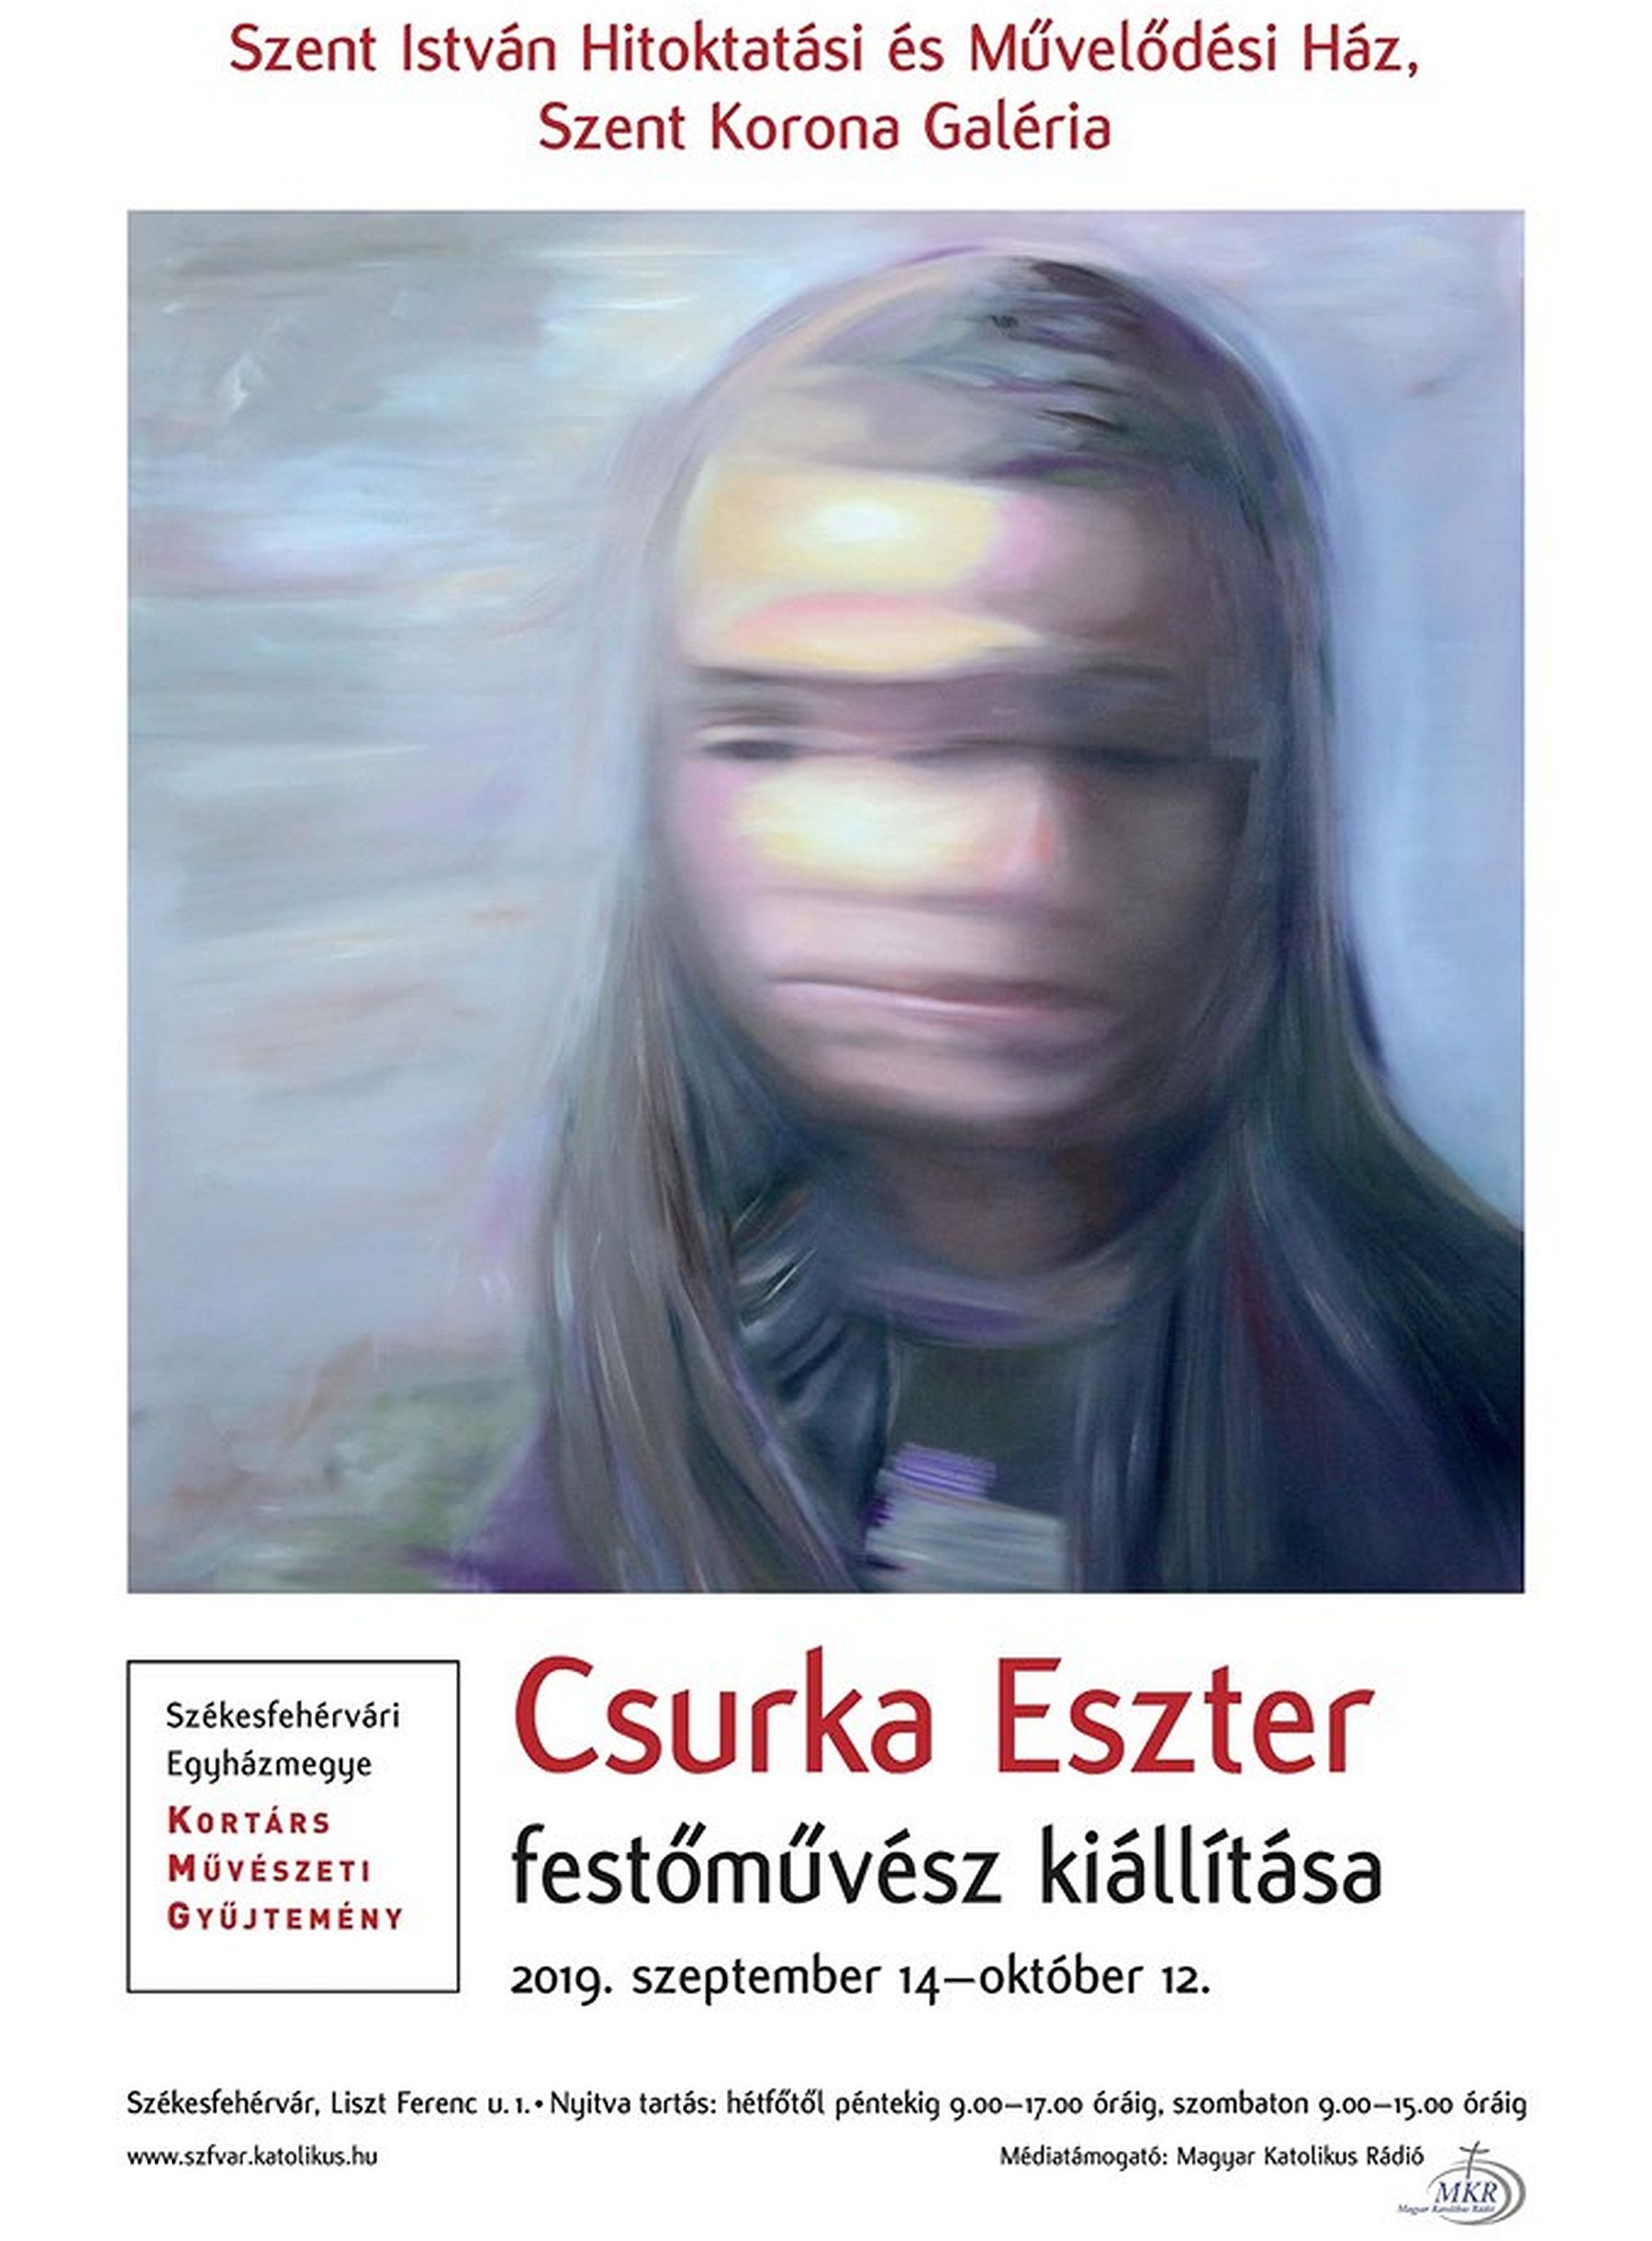 Ars Sacra - Csurka Eszter, Munkácsy-díjas festőművész kiállítása nyílik szombaton